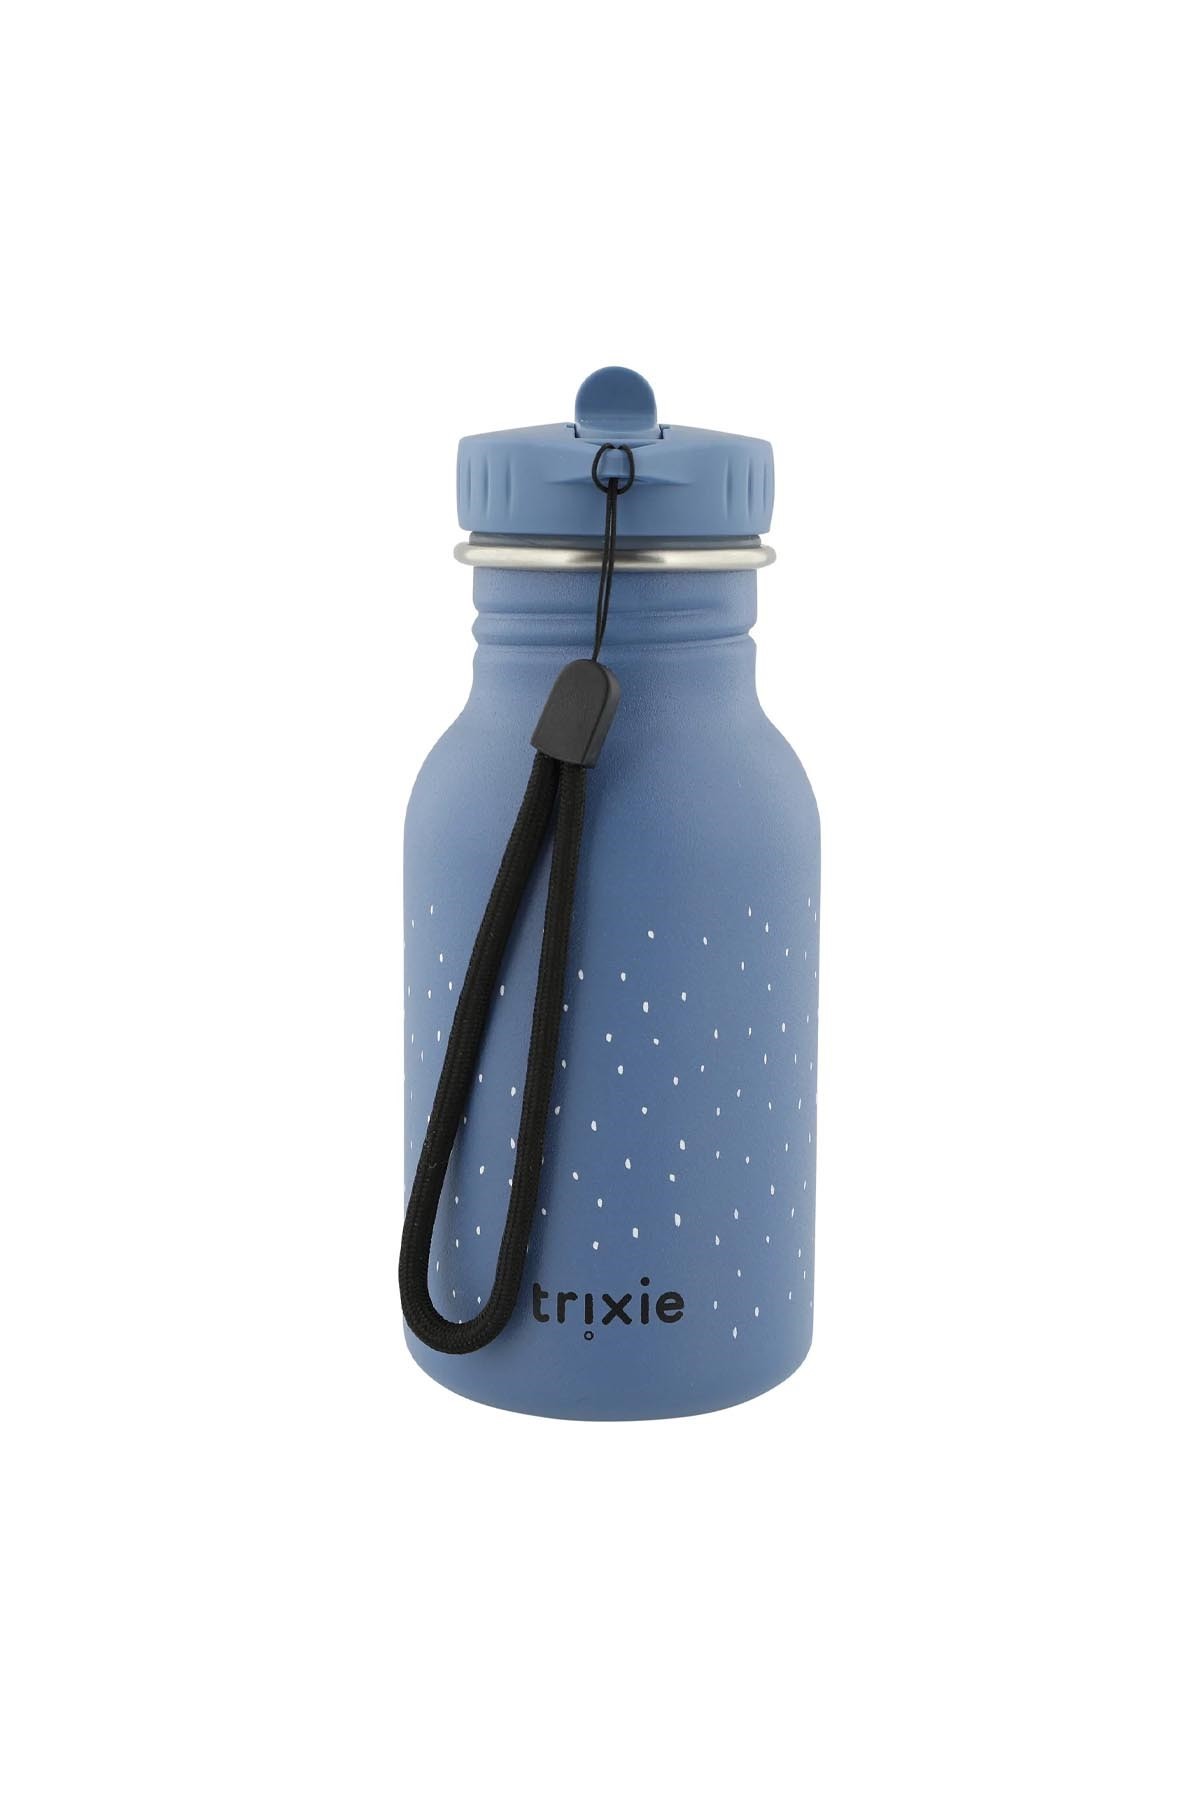 Trixie Bottle Matara Mrs. Elephant 350ml